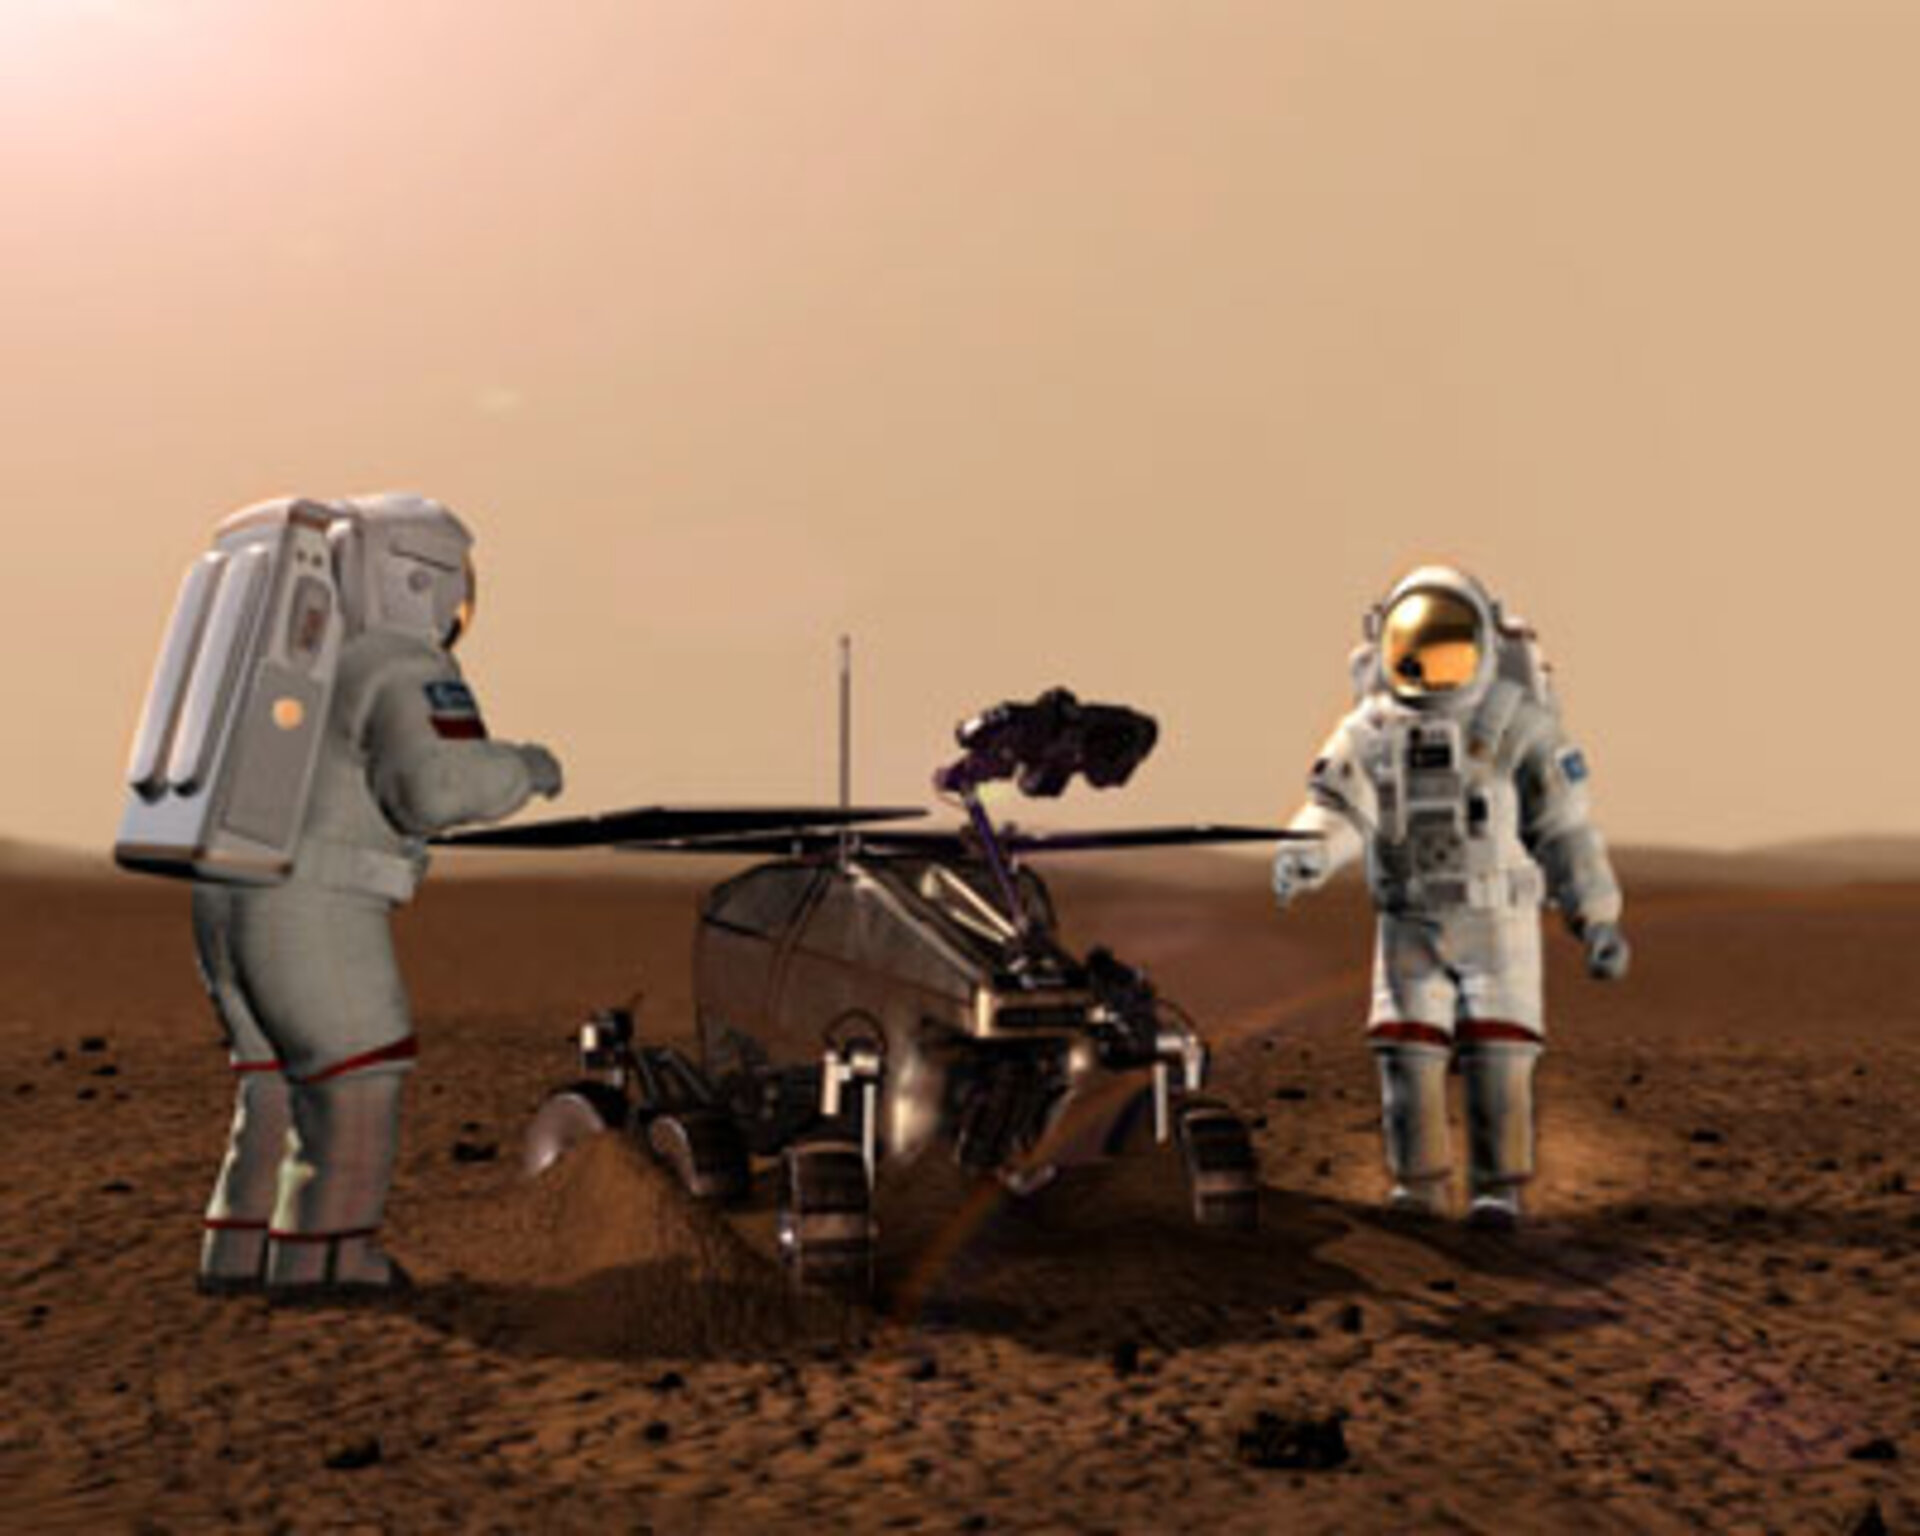 Artist's impression of humans on Mars